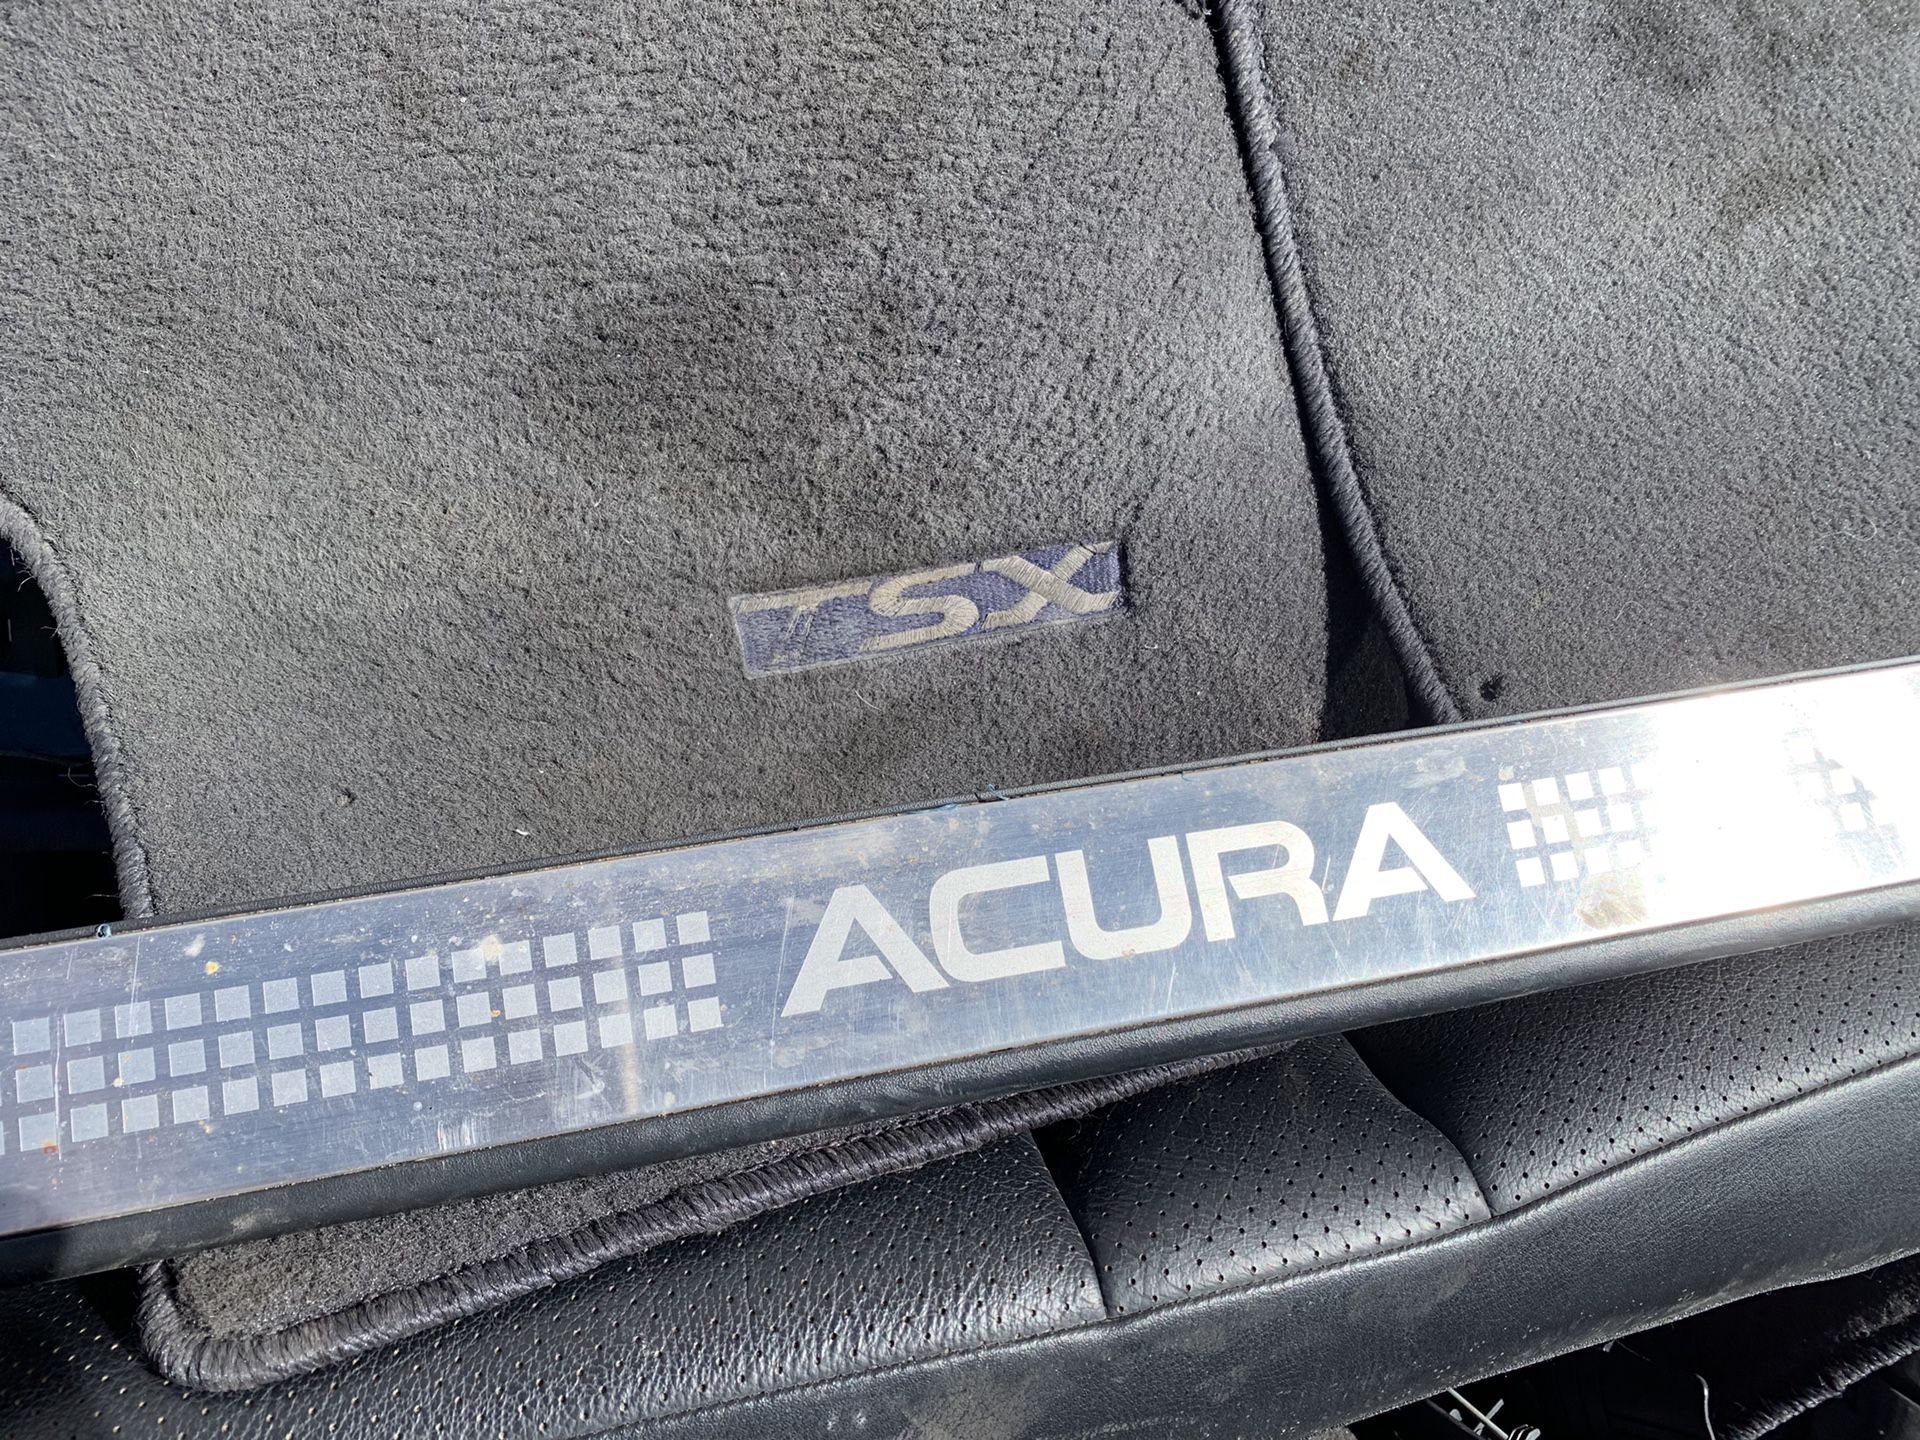 2005 Acura TSX. Parts